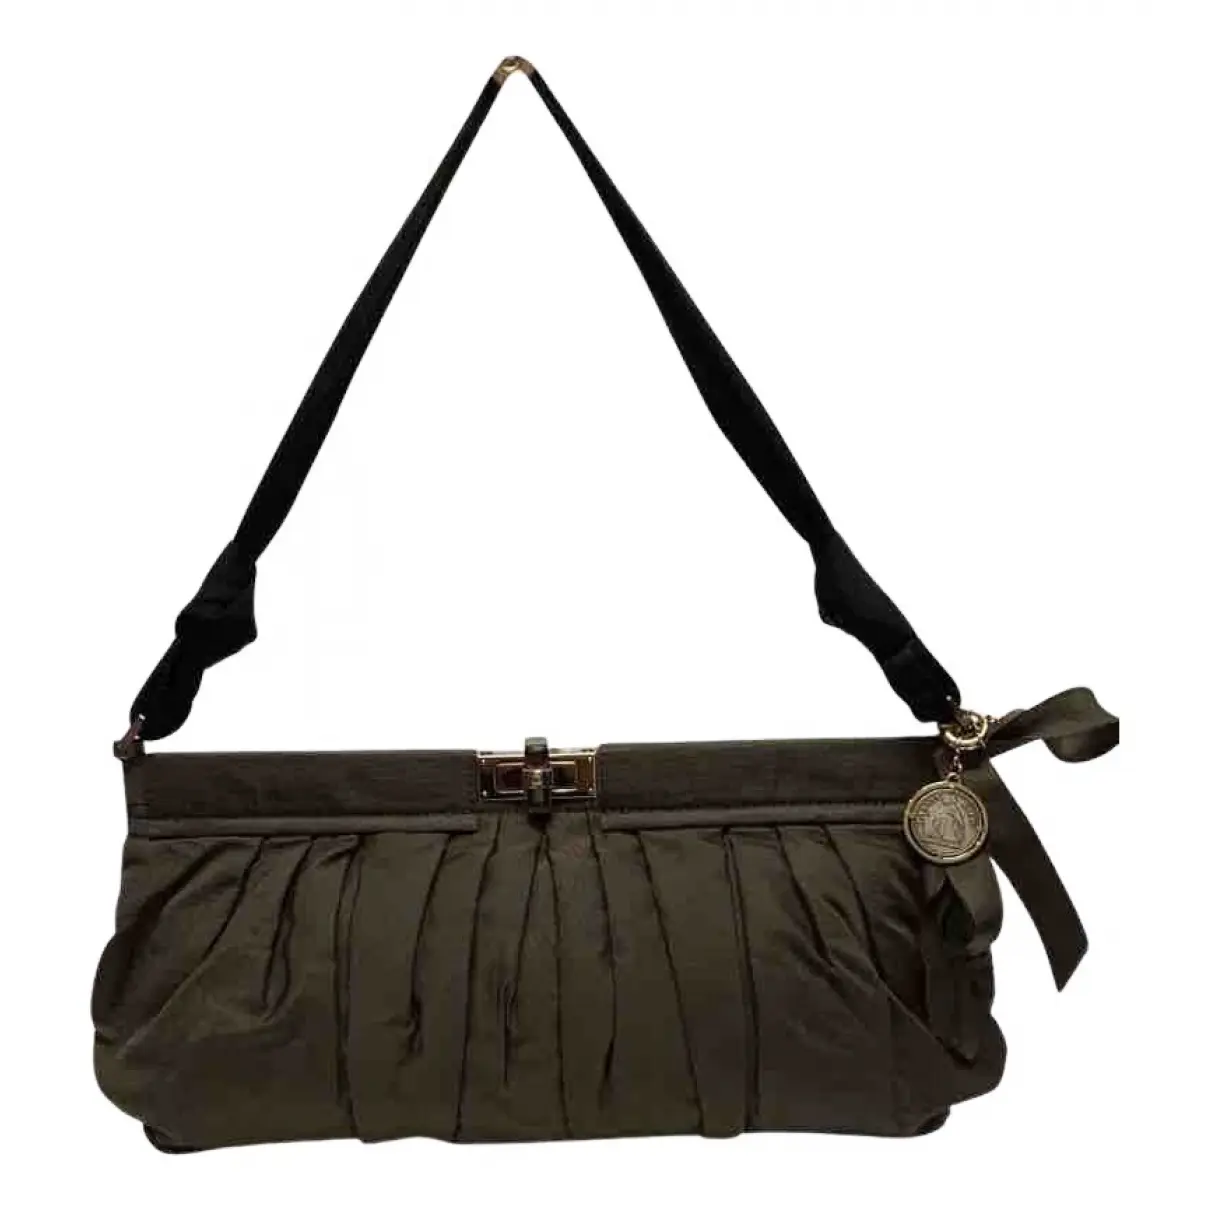 Baguette cloth handbag Lanvin